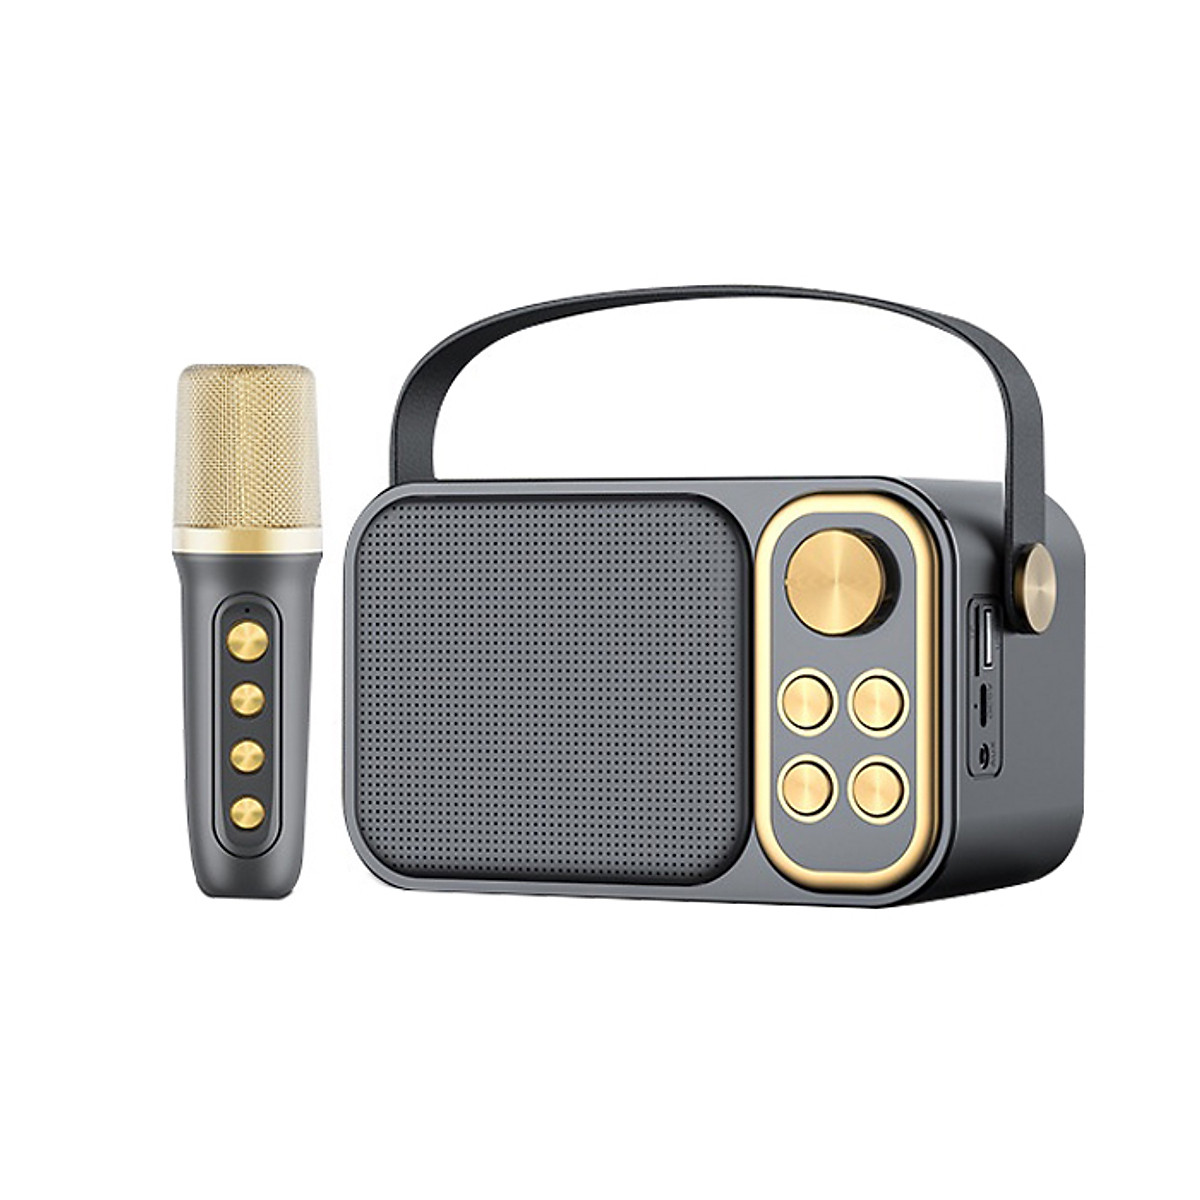 Loa bluetooth mini karaoke kèm mic JVJ YS-104 Không dây, Loa Karaoke  Gia Đình Tặng kèm 01 mic hát , Loa Karaoke thích hợp di chuyển karaoke gia đình, du lịch .Bảo hành chính hãng 06 Tháng